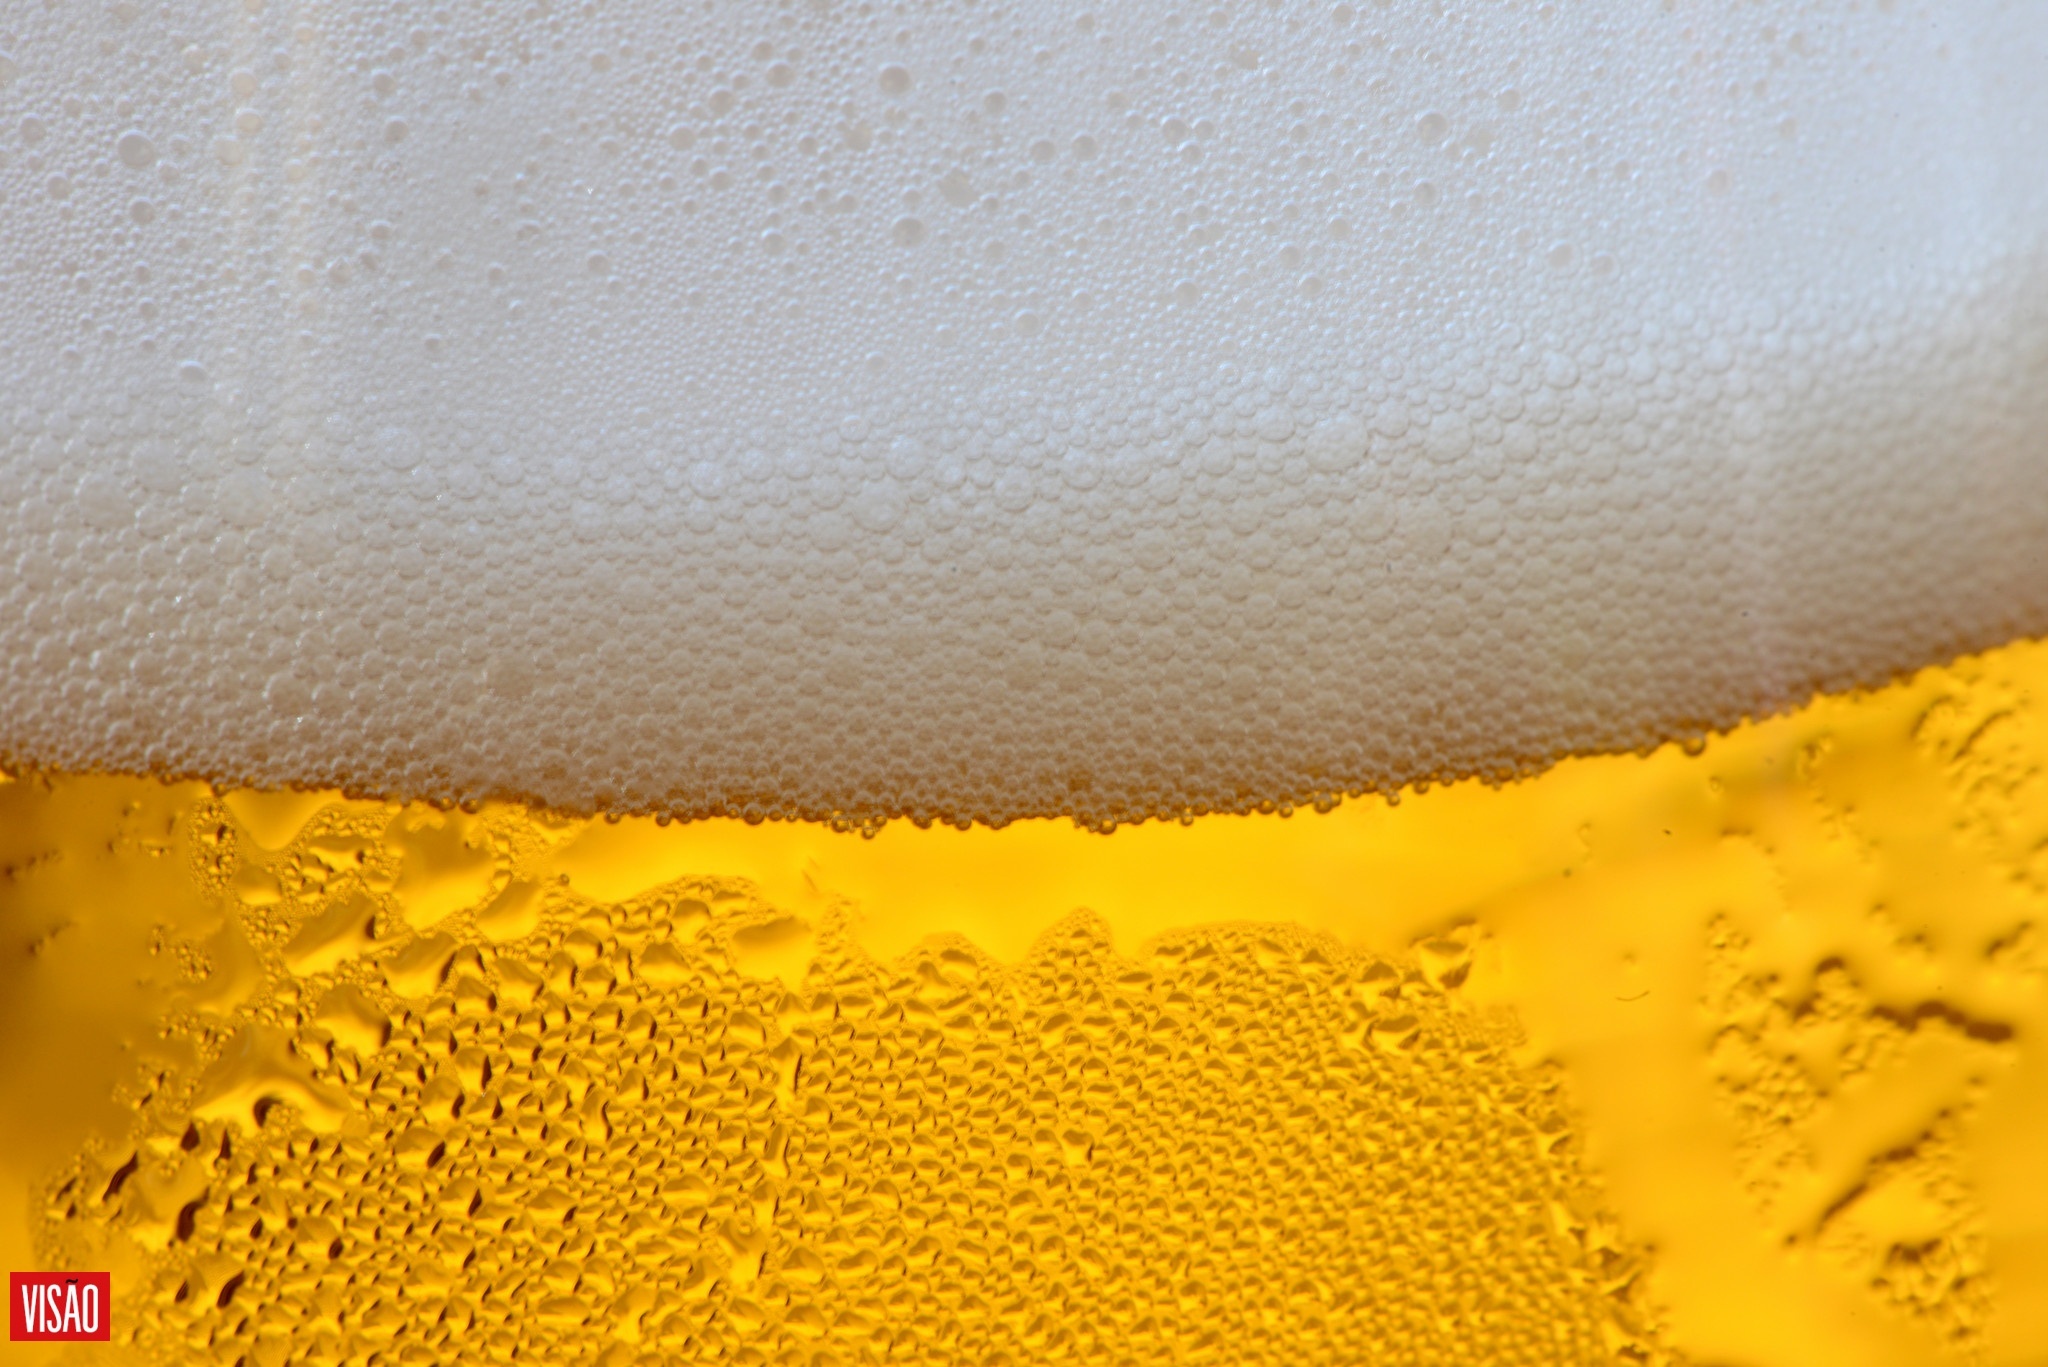 10 benefícios da cerveja, segundo a ciência